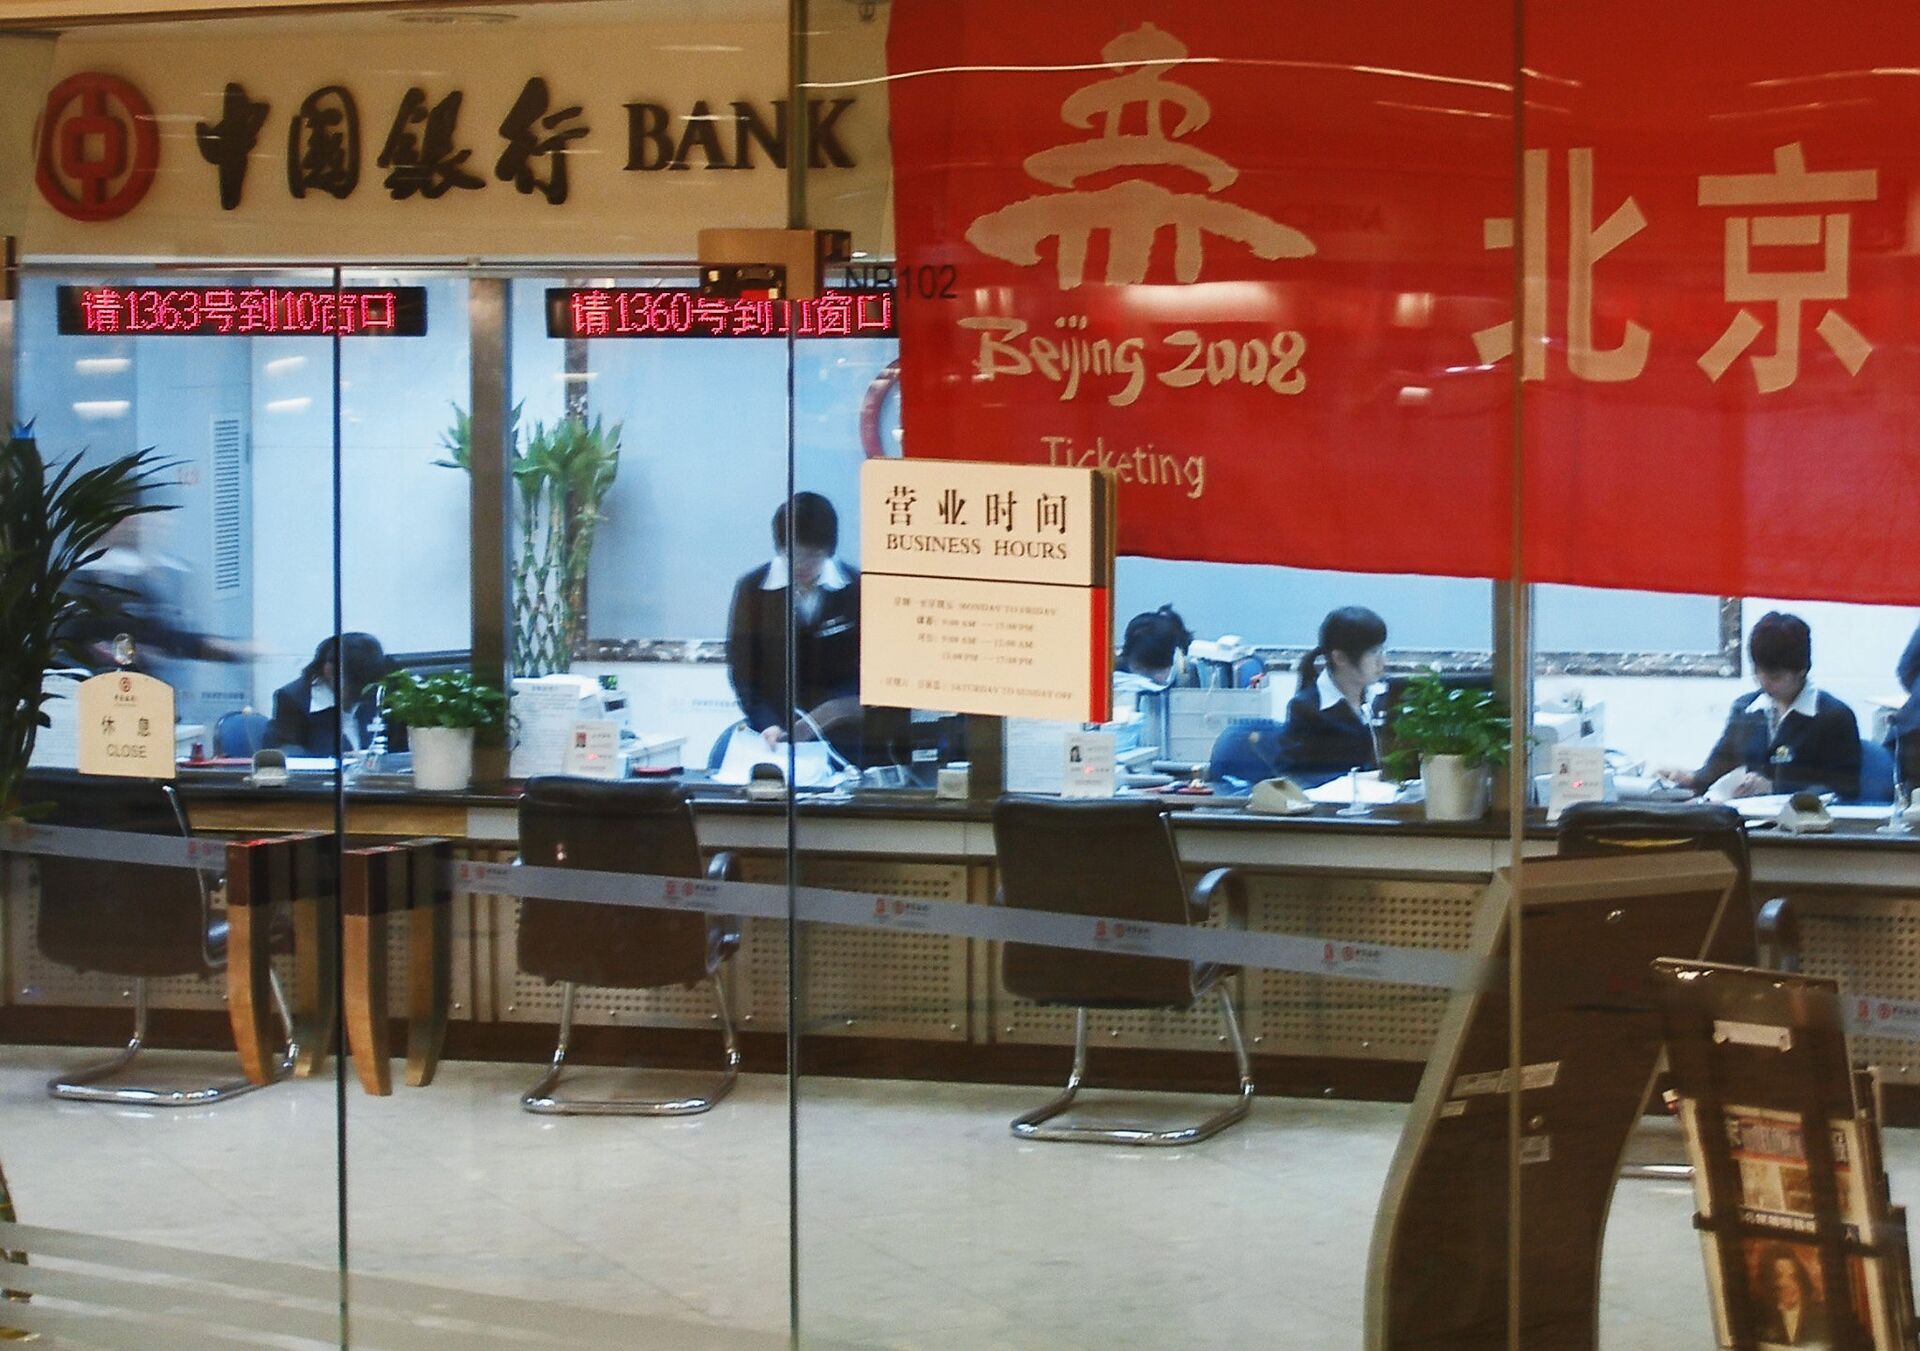 Bank of china принимает платежи из россии. Офис банка в Китае.